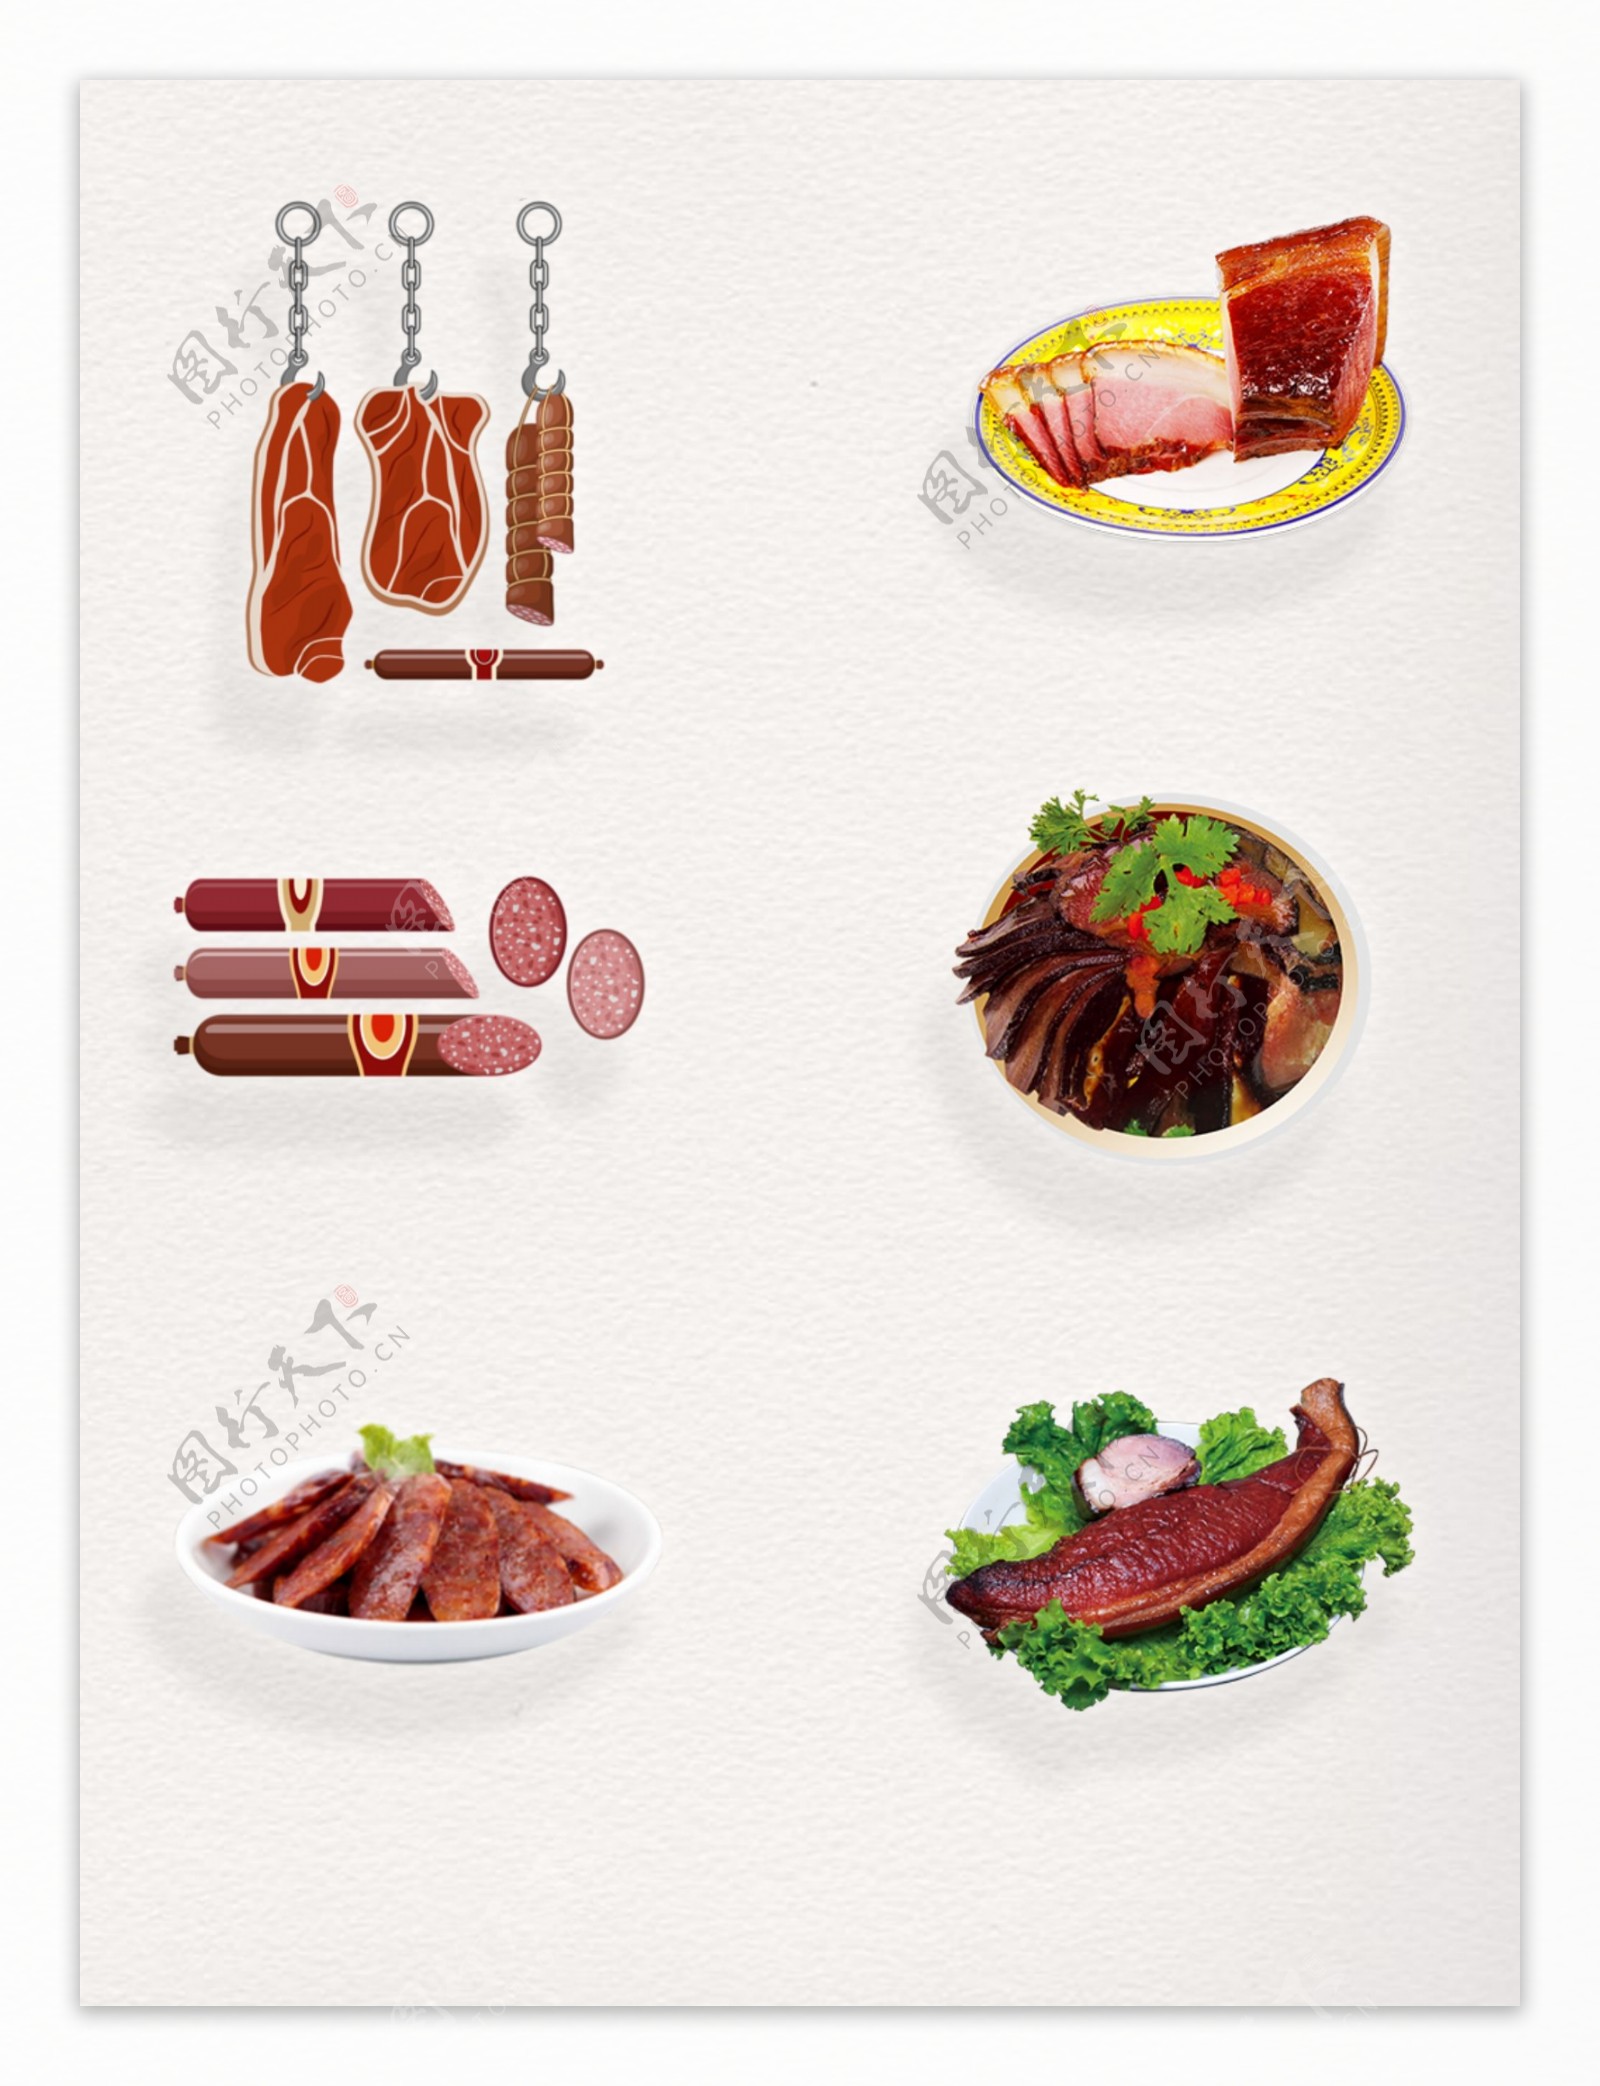 中国传统美味腊味食品装饰图案